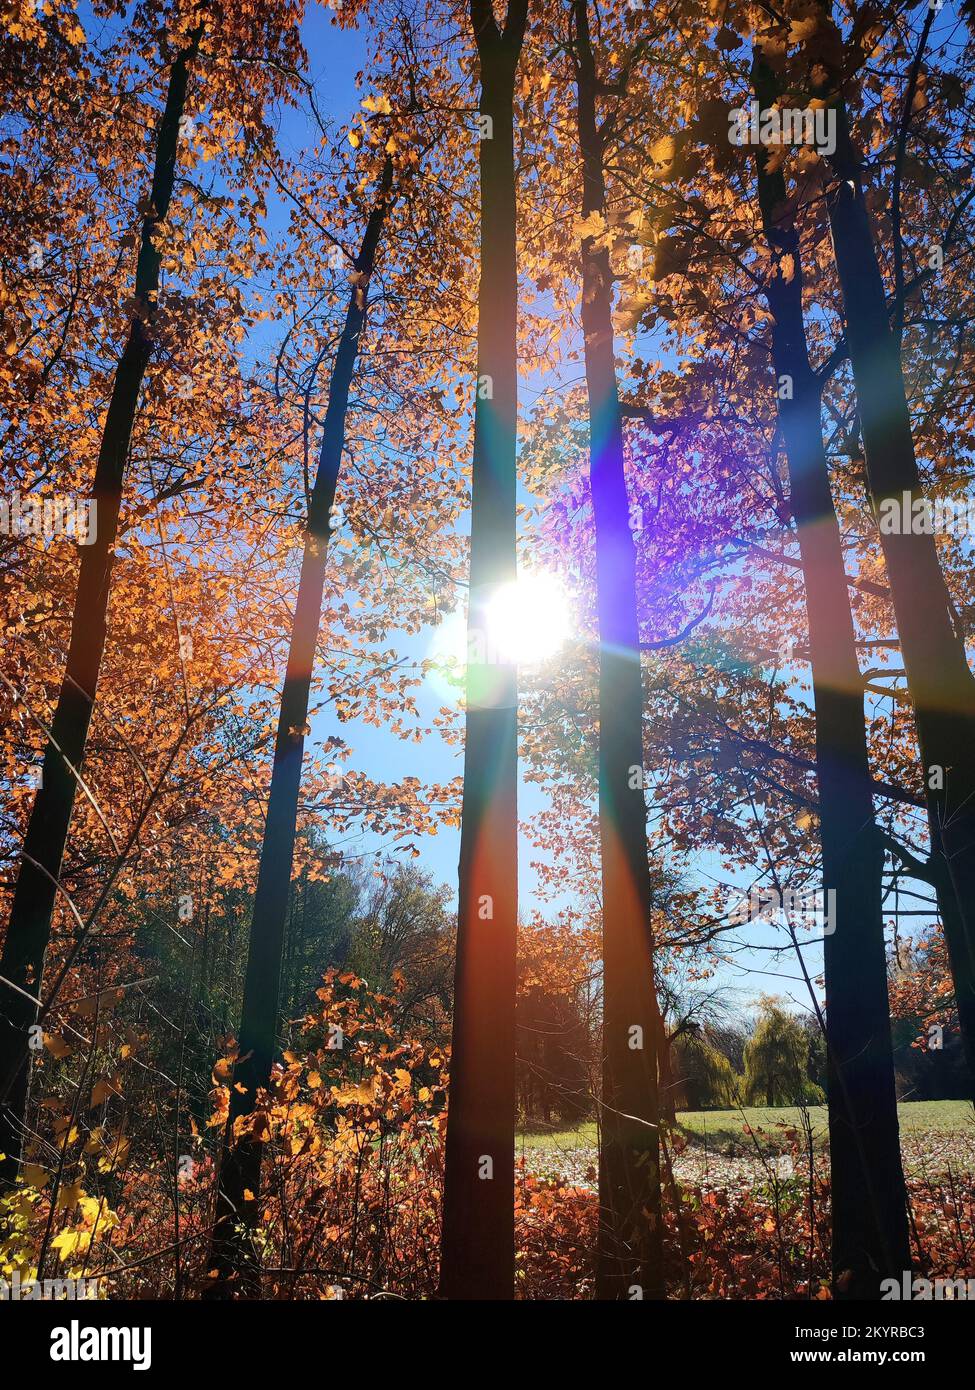 Blick auf den Wald mit Lichtung an sonnigen, windigen Herbsttagen. Rot-orange-braune Blätter auf Bäumen, Gras auf Hintergrund klarer blauer Himmel mit heller Sonne im Herbst. Wunderschöner natürlicher Hintergrund Stockfoto